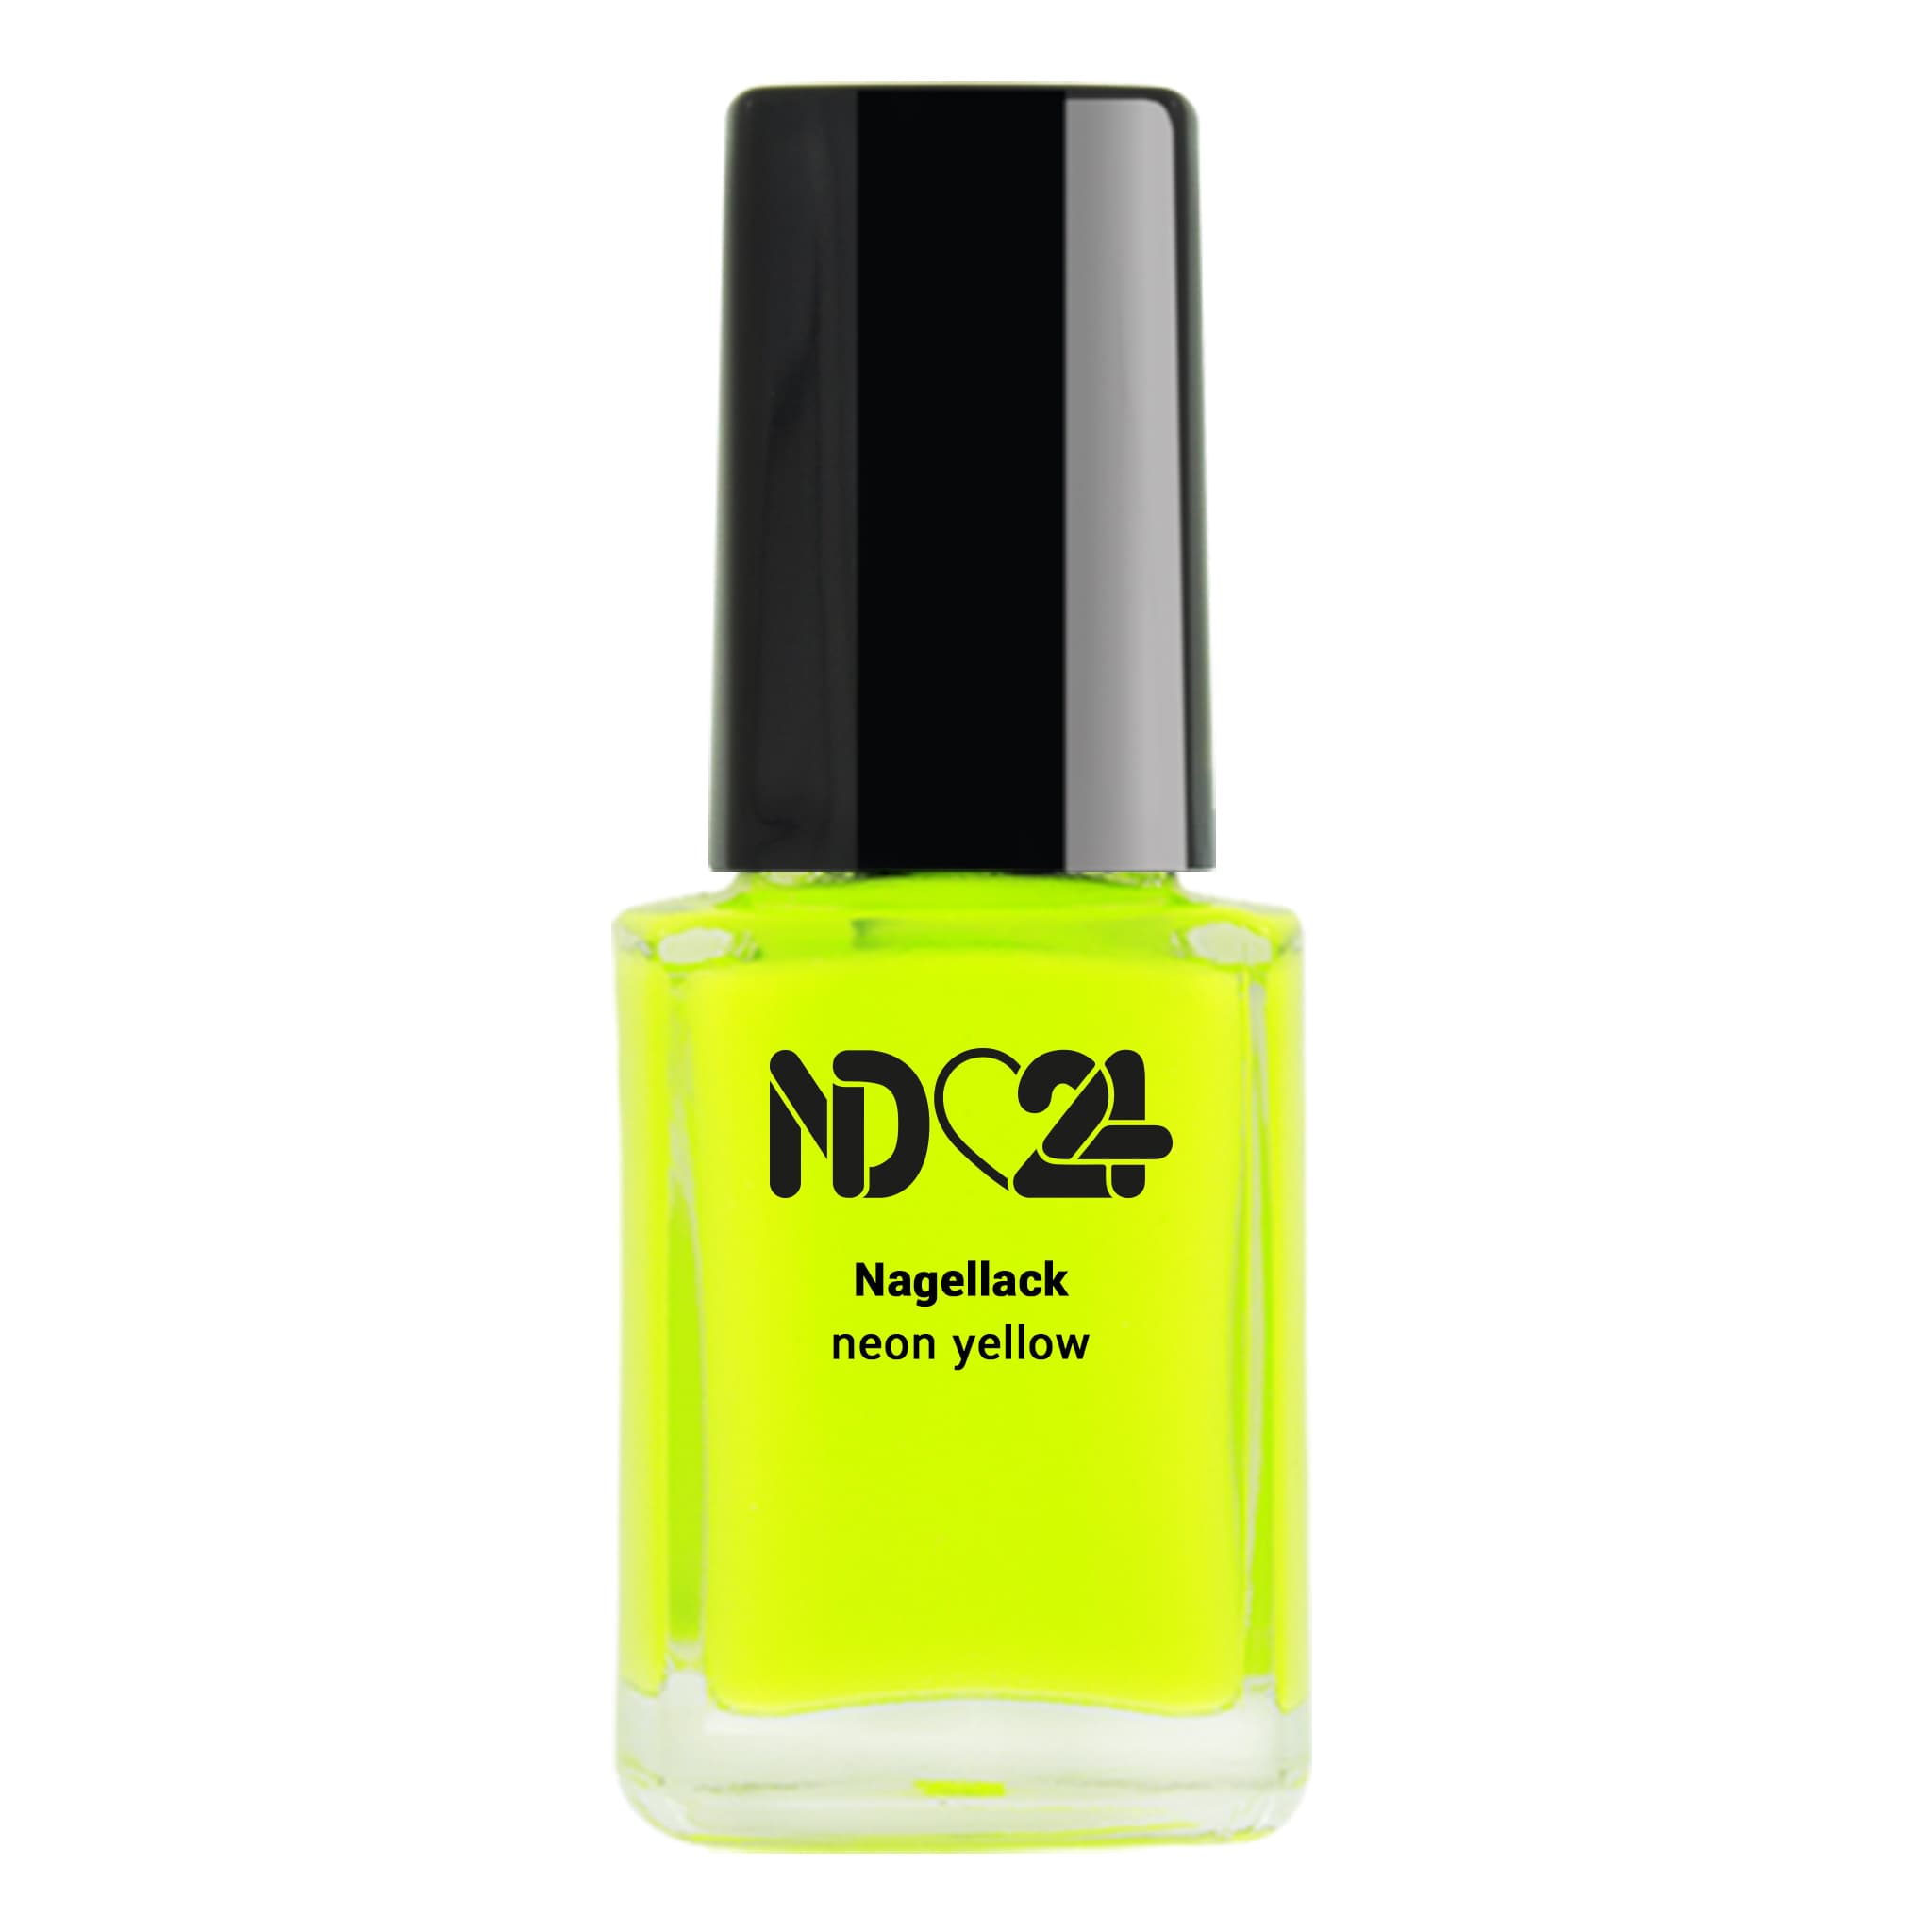 günstig bestellen ND24 yellow Nagellack 😍 neon bei NailDesign